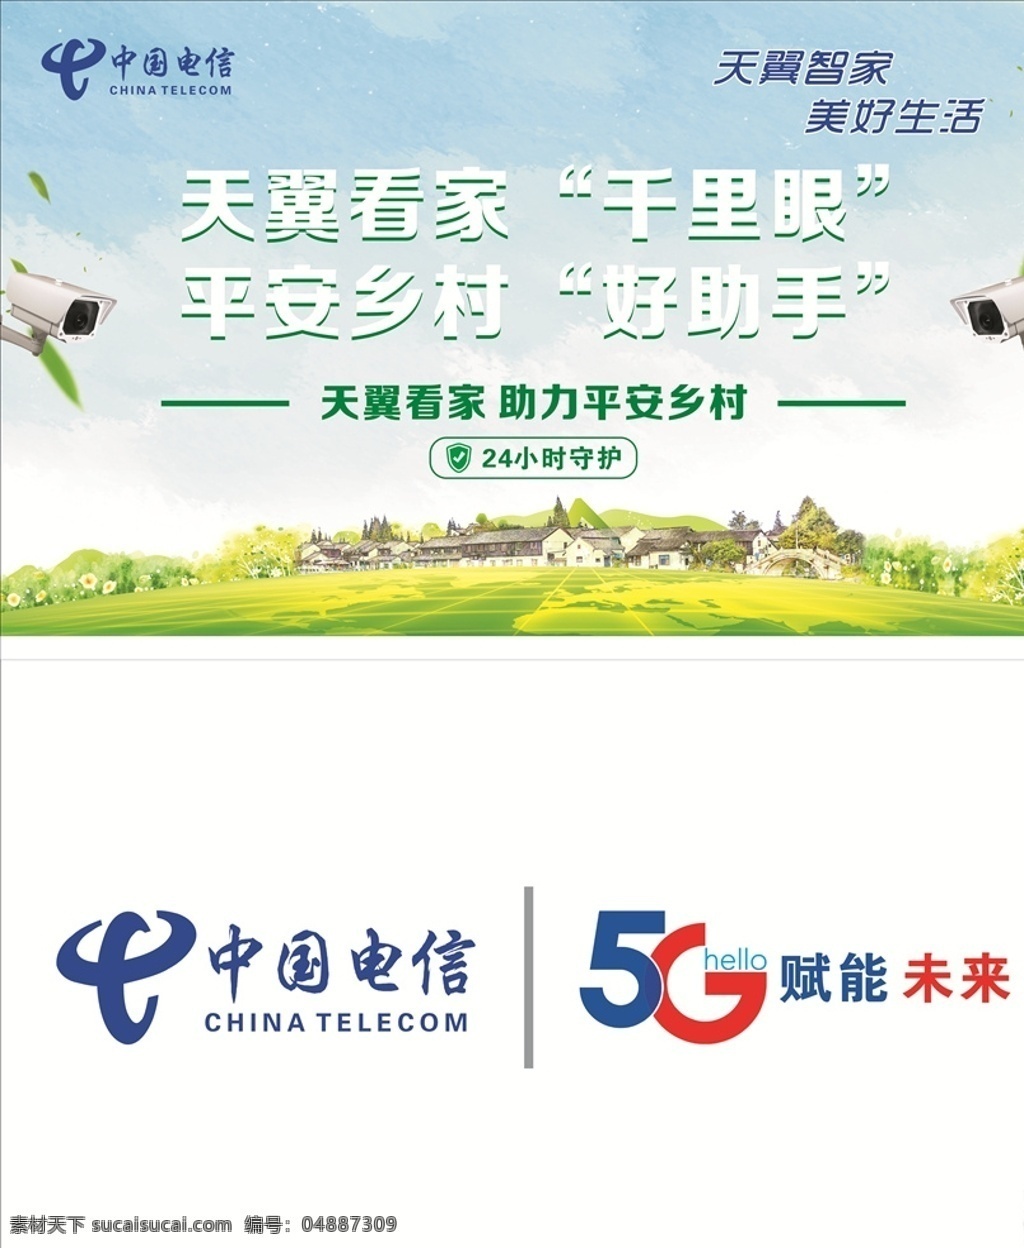 中国电信 5g图片 中国 电信 5g 赋能 未来